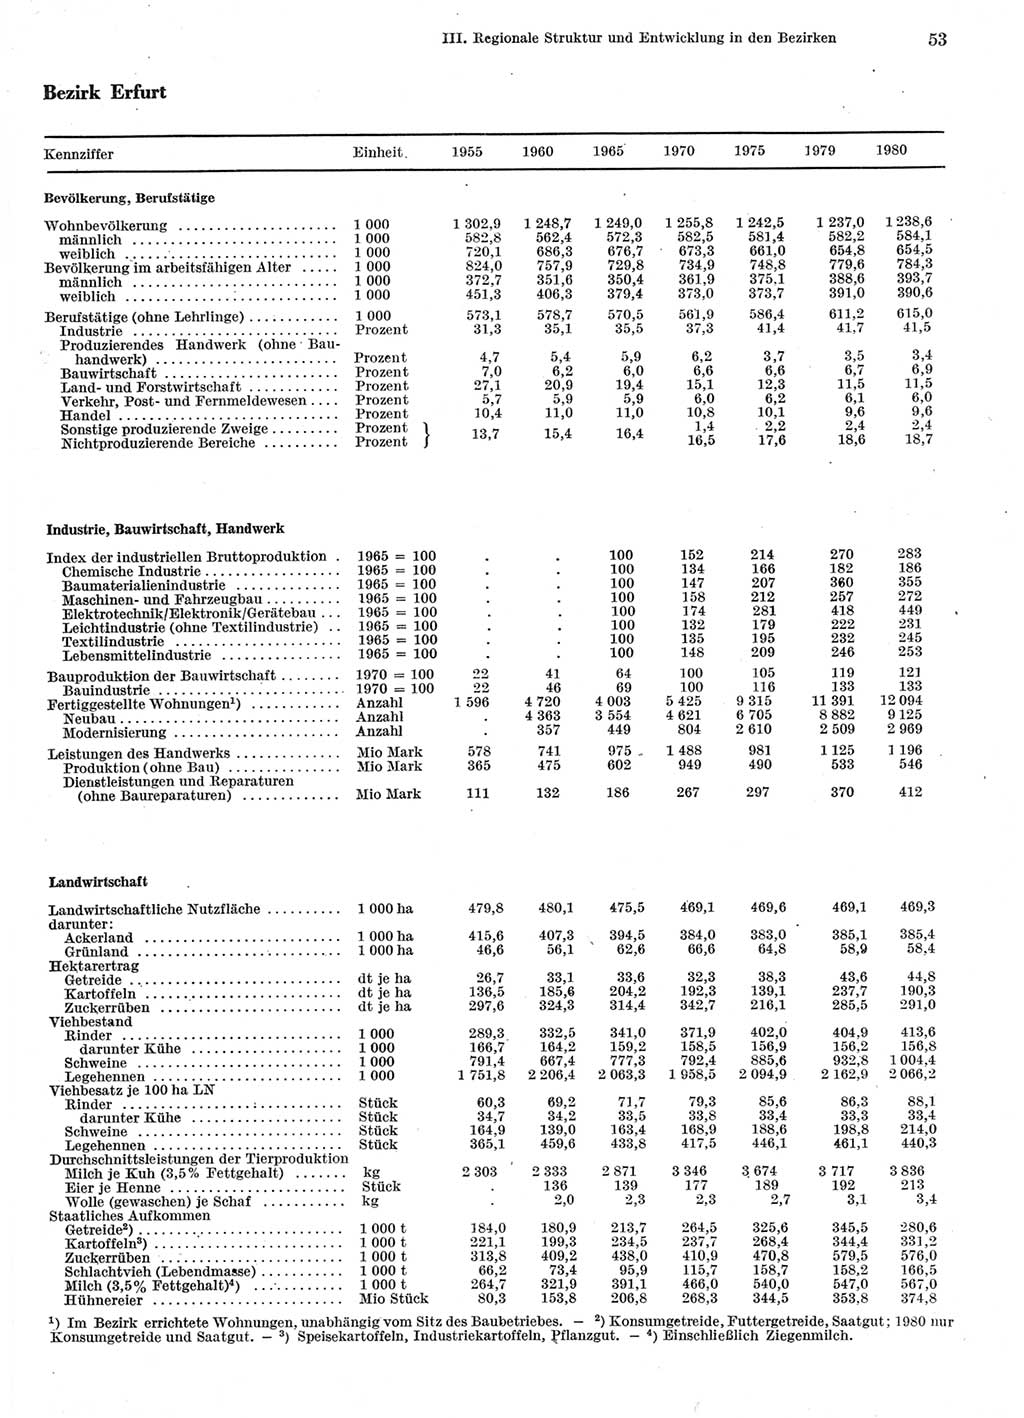 Statistisches Jahrbuch der Deutschen Demokratischen Republik (DDR) 1981, Seite 53 (Stat. Jb. DDR 1981, S. 53)